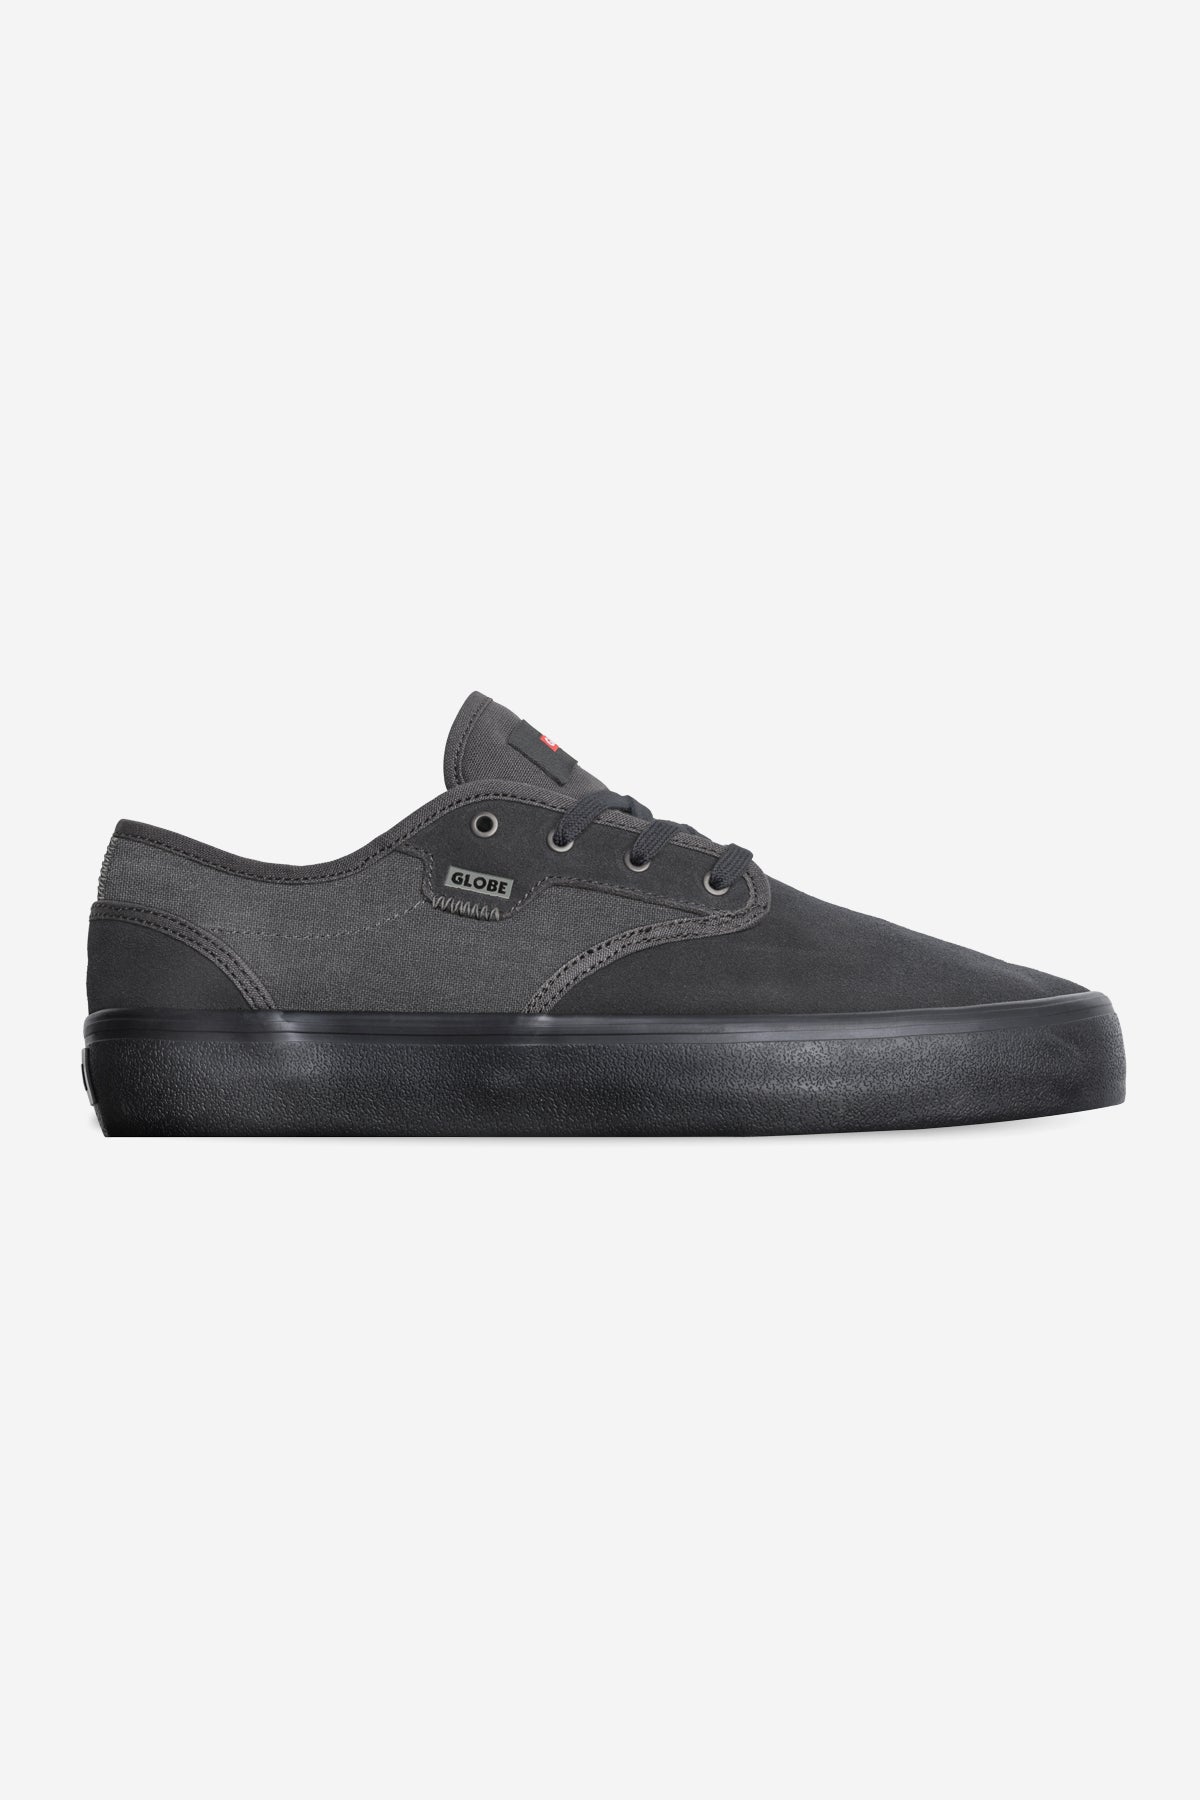 Motley II - Lead/Black - Skate Shoes